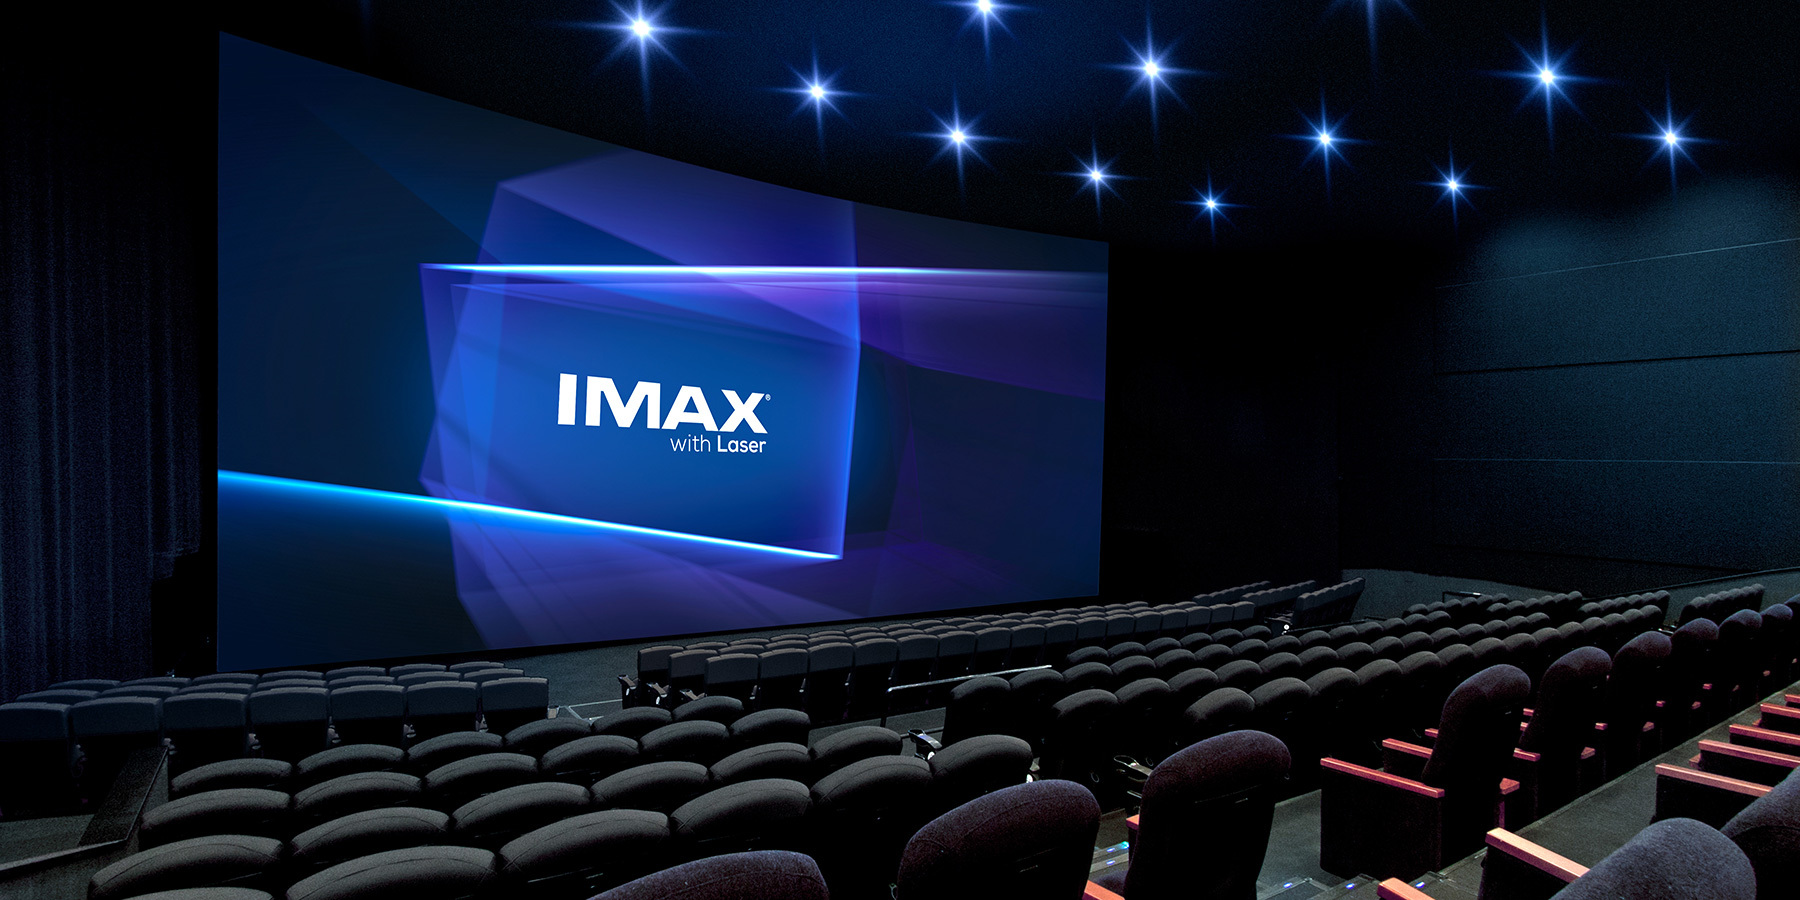  IMAX        